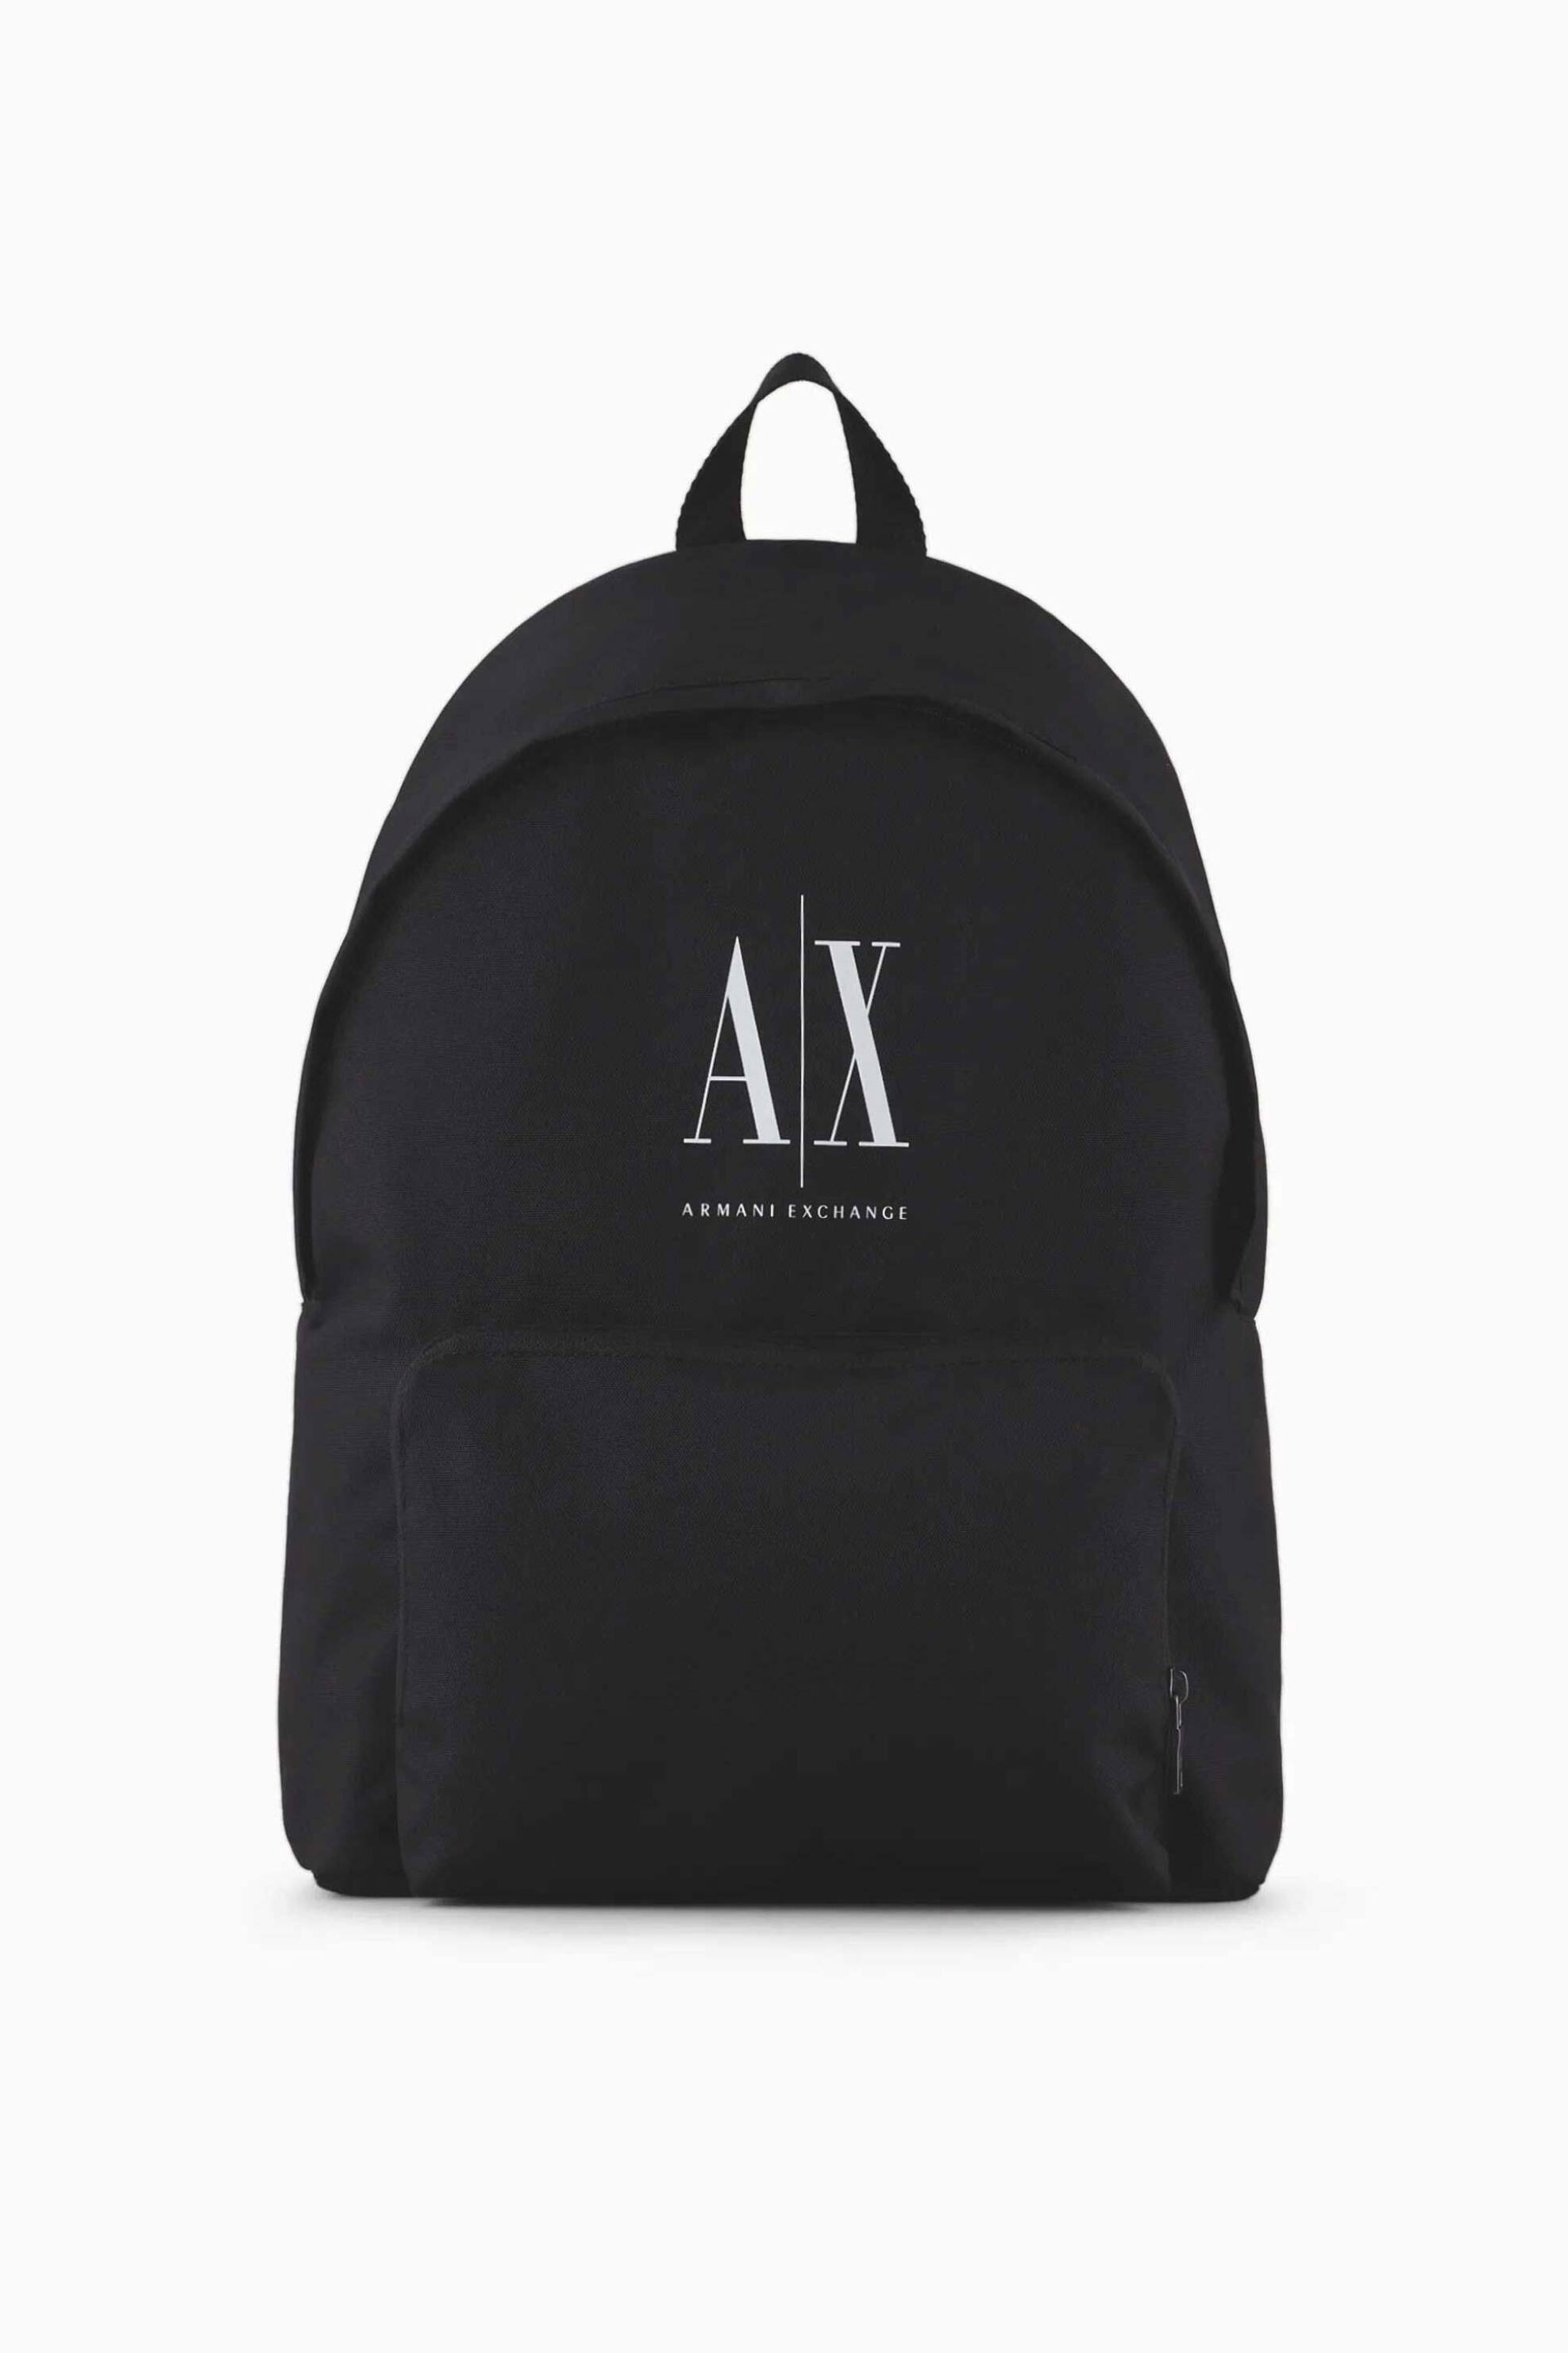 Ανδρική Μόδα > Ανδρικές Τσάντες > Ανδρικά Σακίδια & Backpacks Armani Exchange ανδρικό backpack με λογότυπο - 952336CC124 Μαύρο